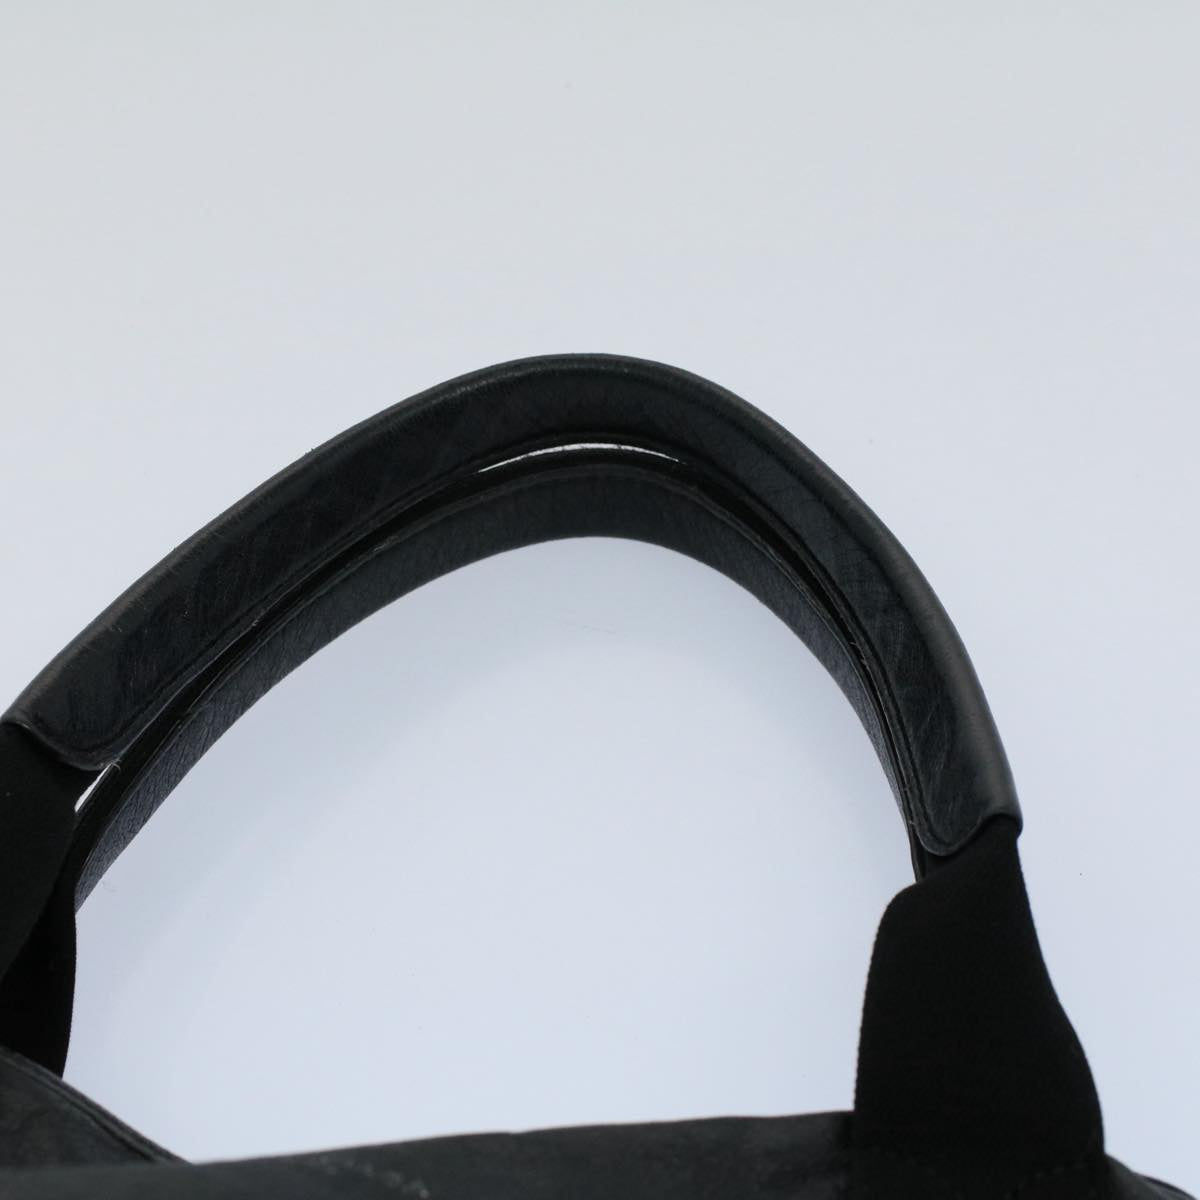 BALENCIAGA Tote Bag Leather Black 542017 Auth ep1814